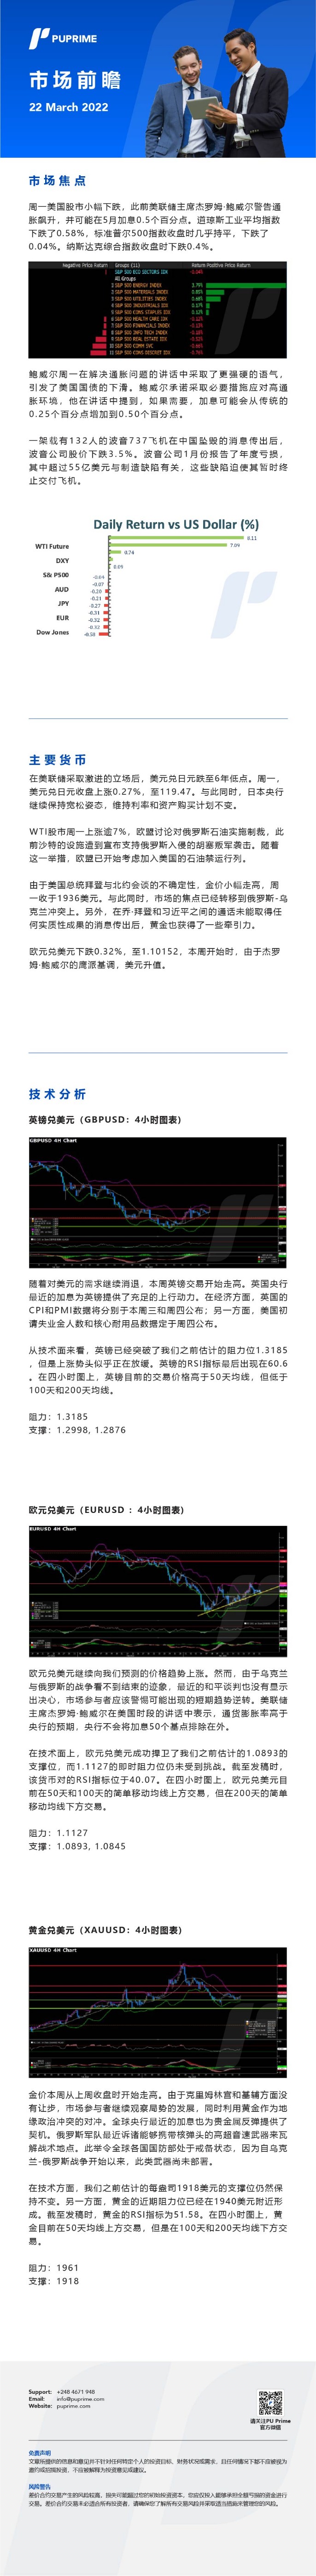 22032022_Daily Market Analysis__CHN.jpg